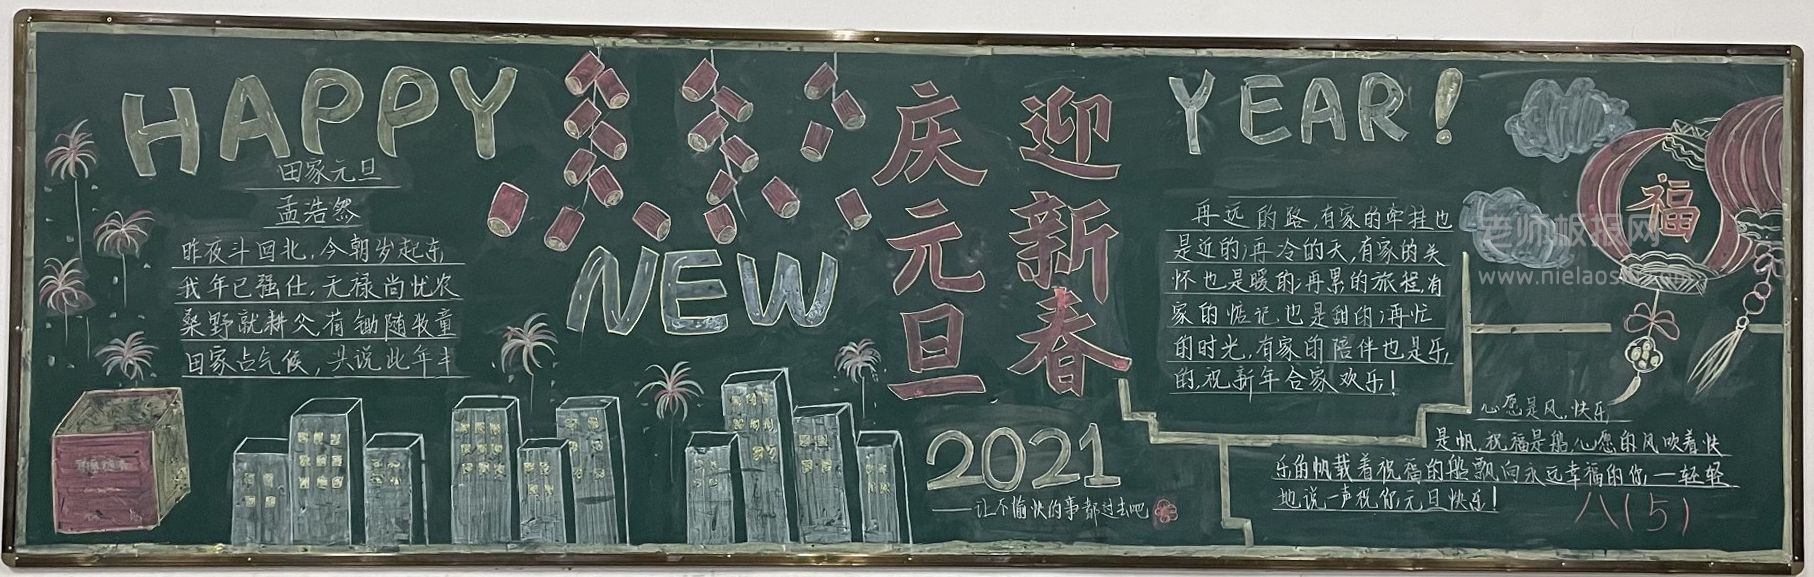 2021庆元旦迎新春黑板报图片 HAPPY YEAR